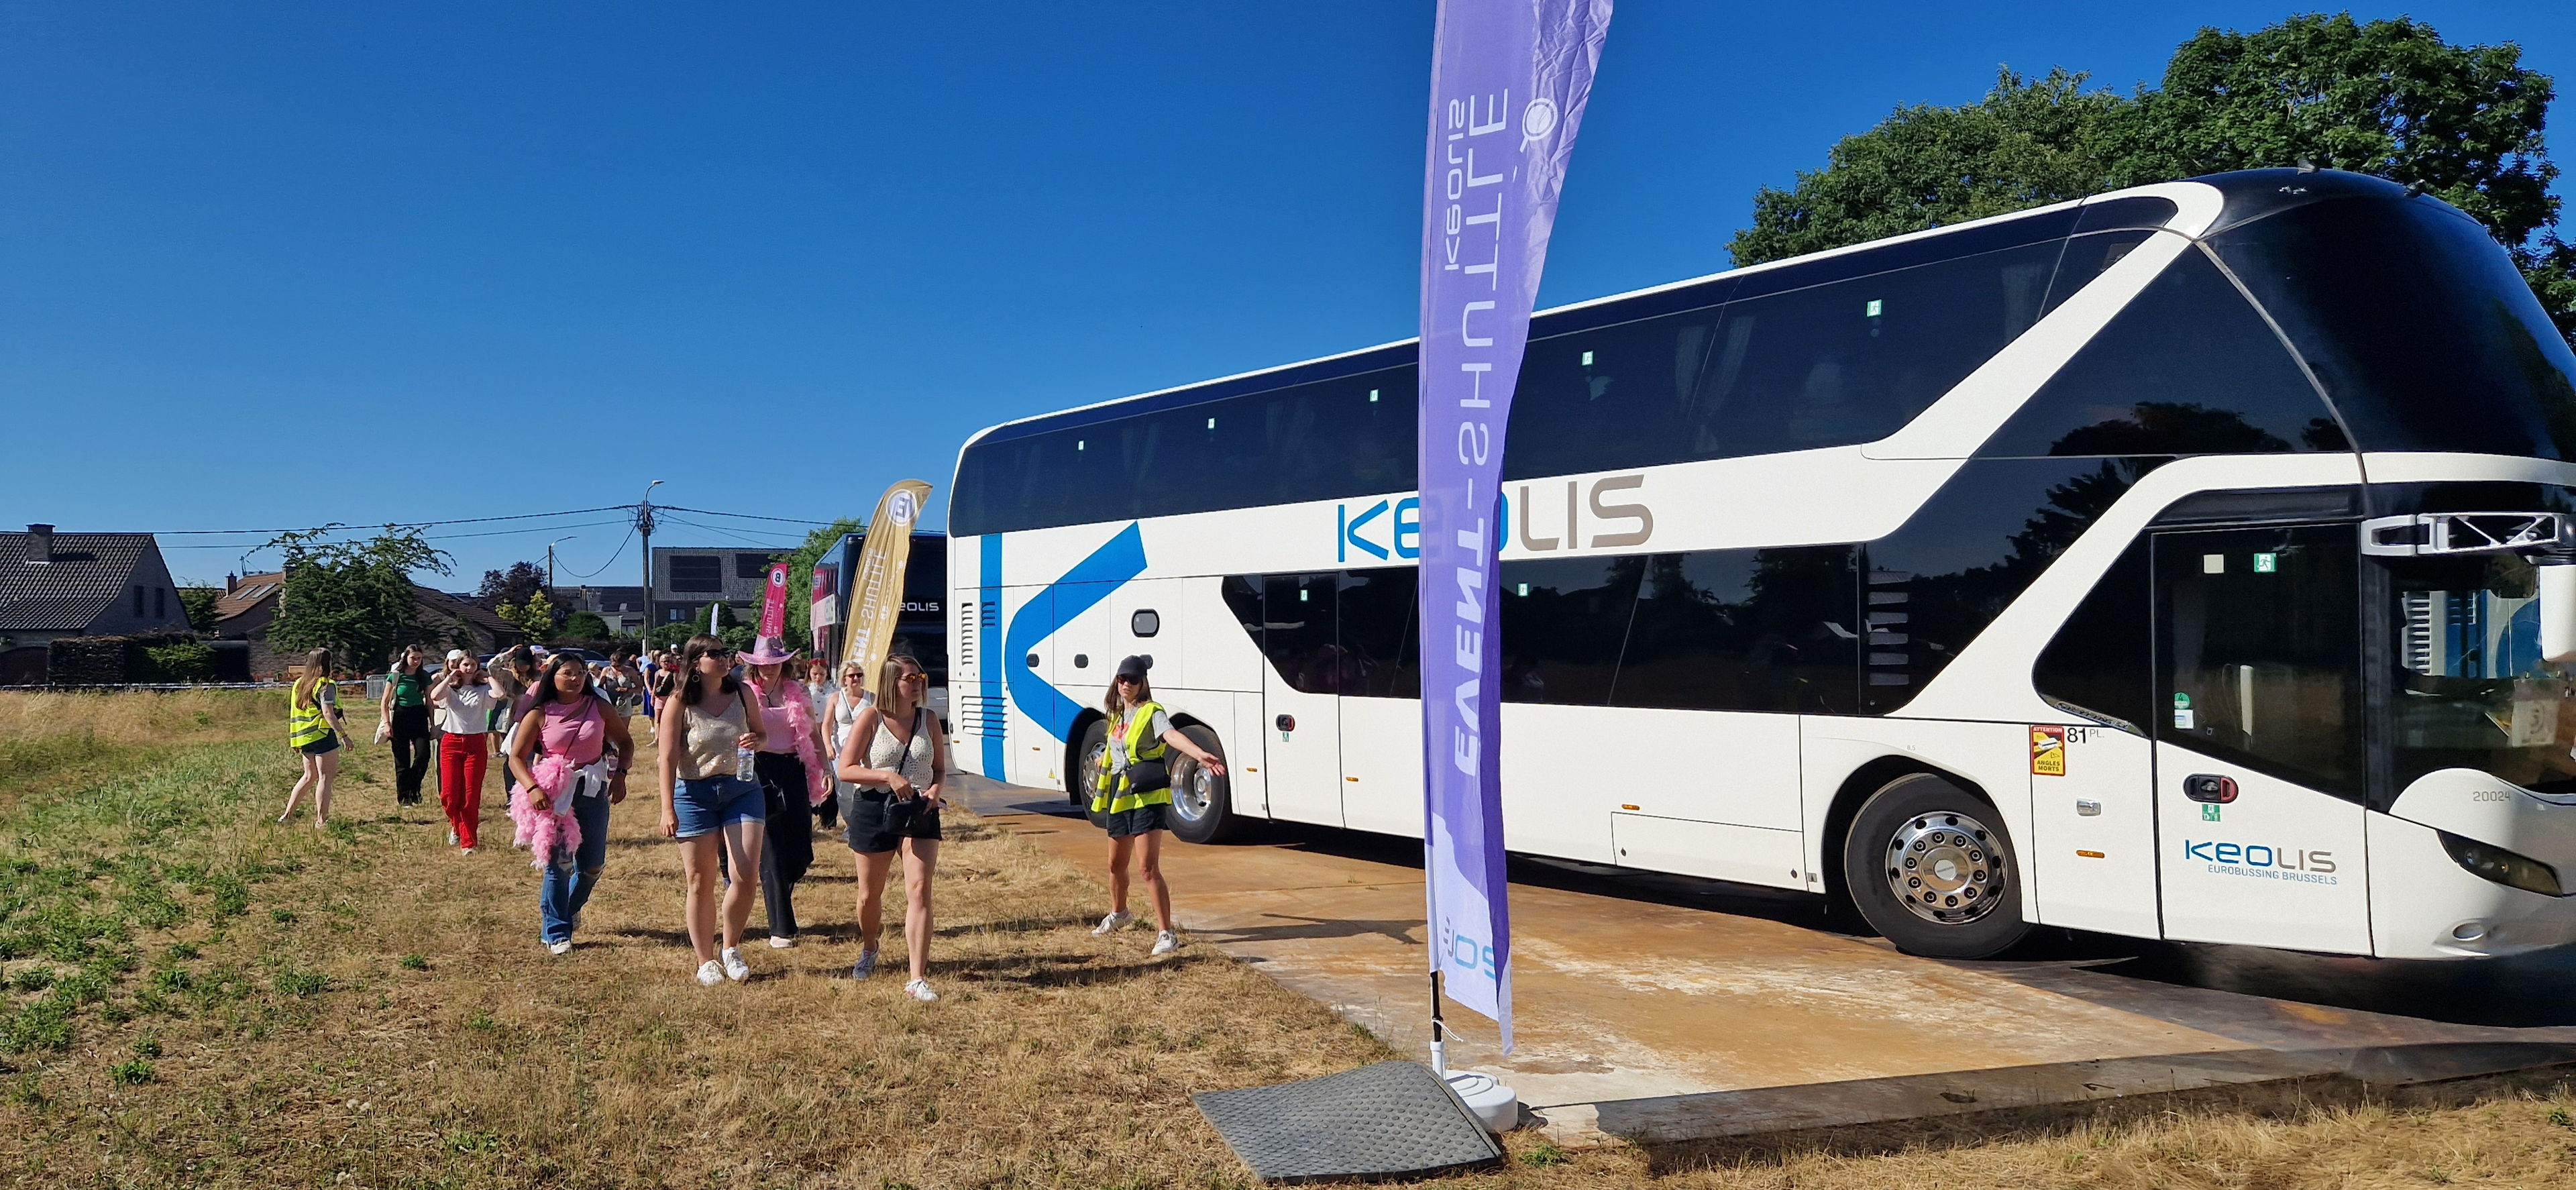 Dubbel zoveel zomerfestivals zetten in op langeafstandsbussen om verkeersdrukte te vermijden